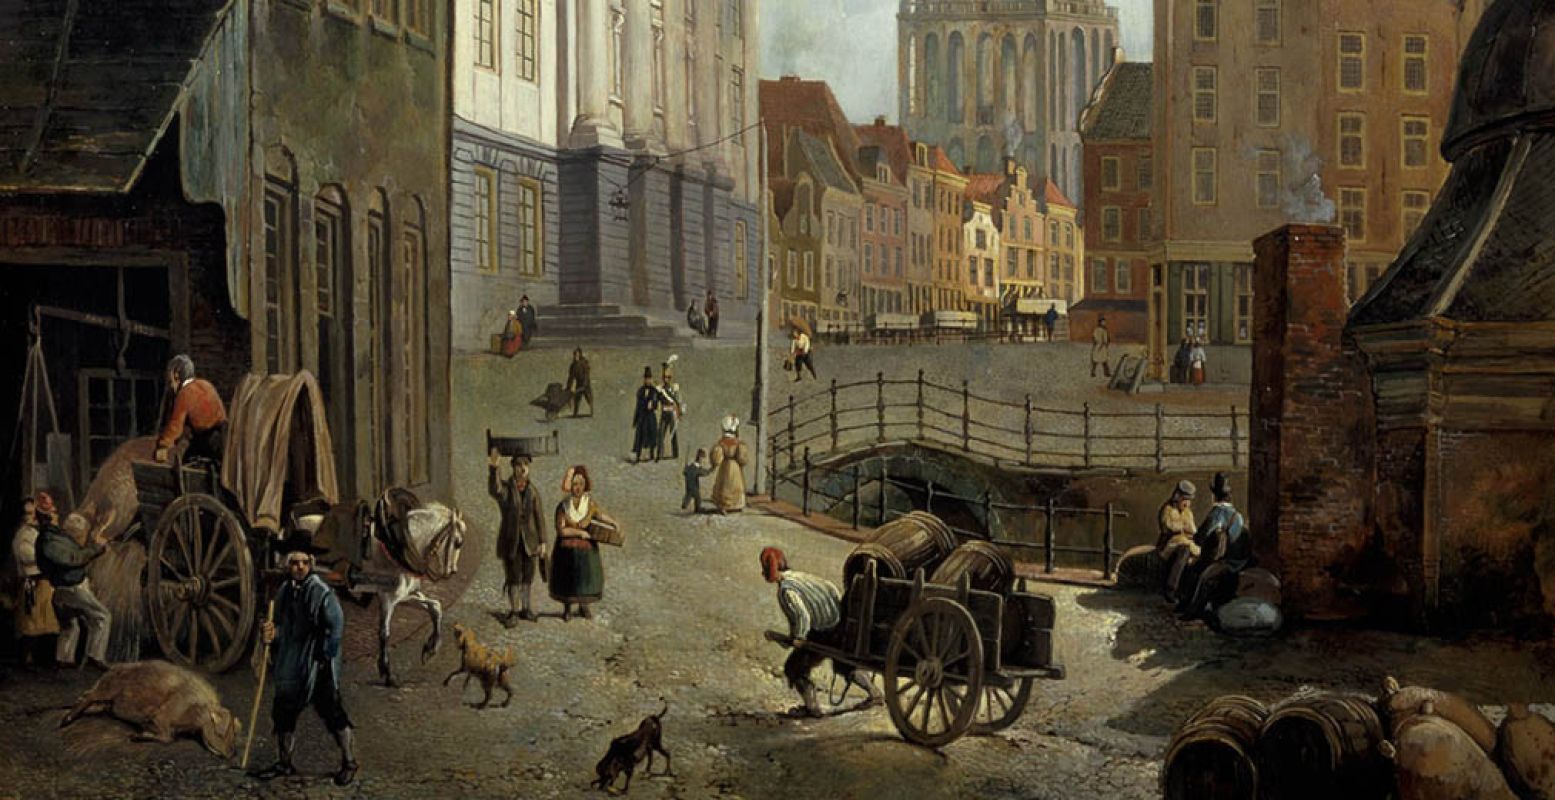 Foto: Reinier Craeyvanger, De Stadhuisbrug in Utrecht, (1833). Olieverf op doek. Collectie Centraal Museum.